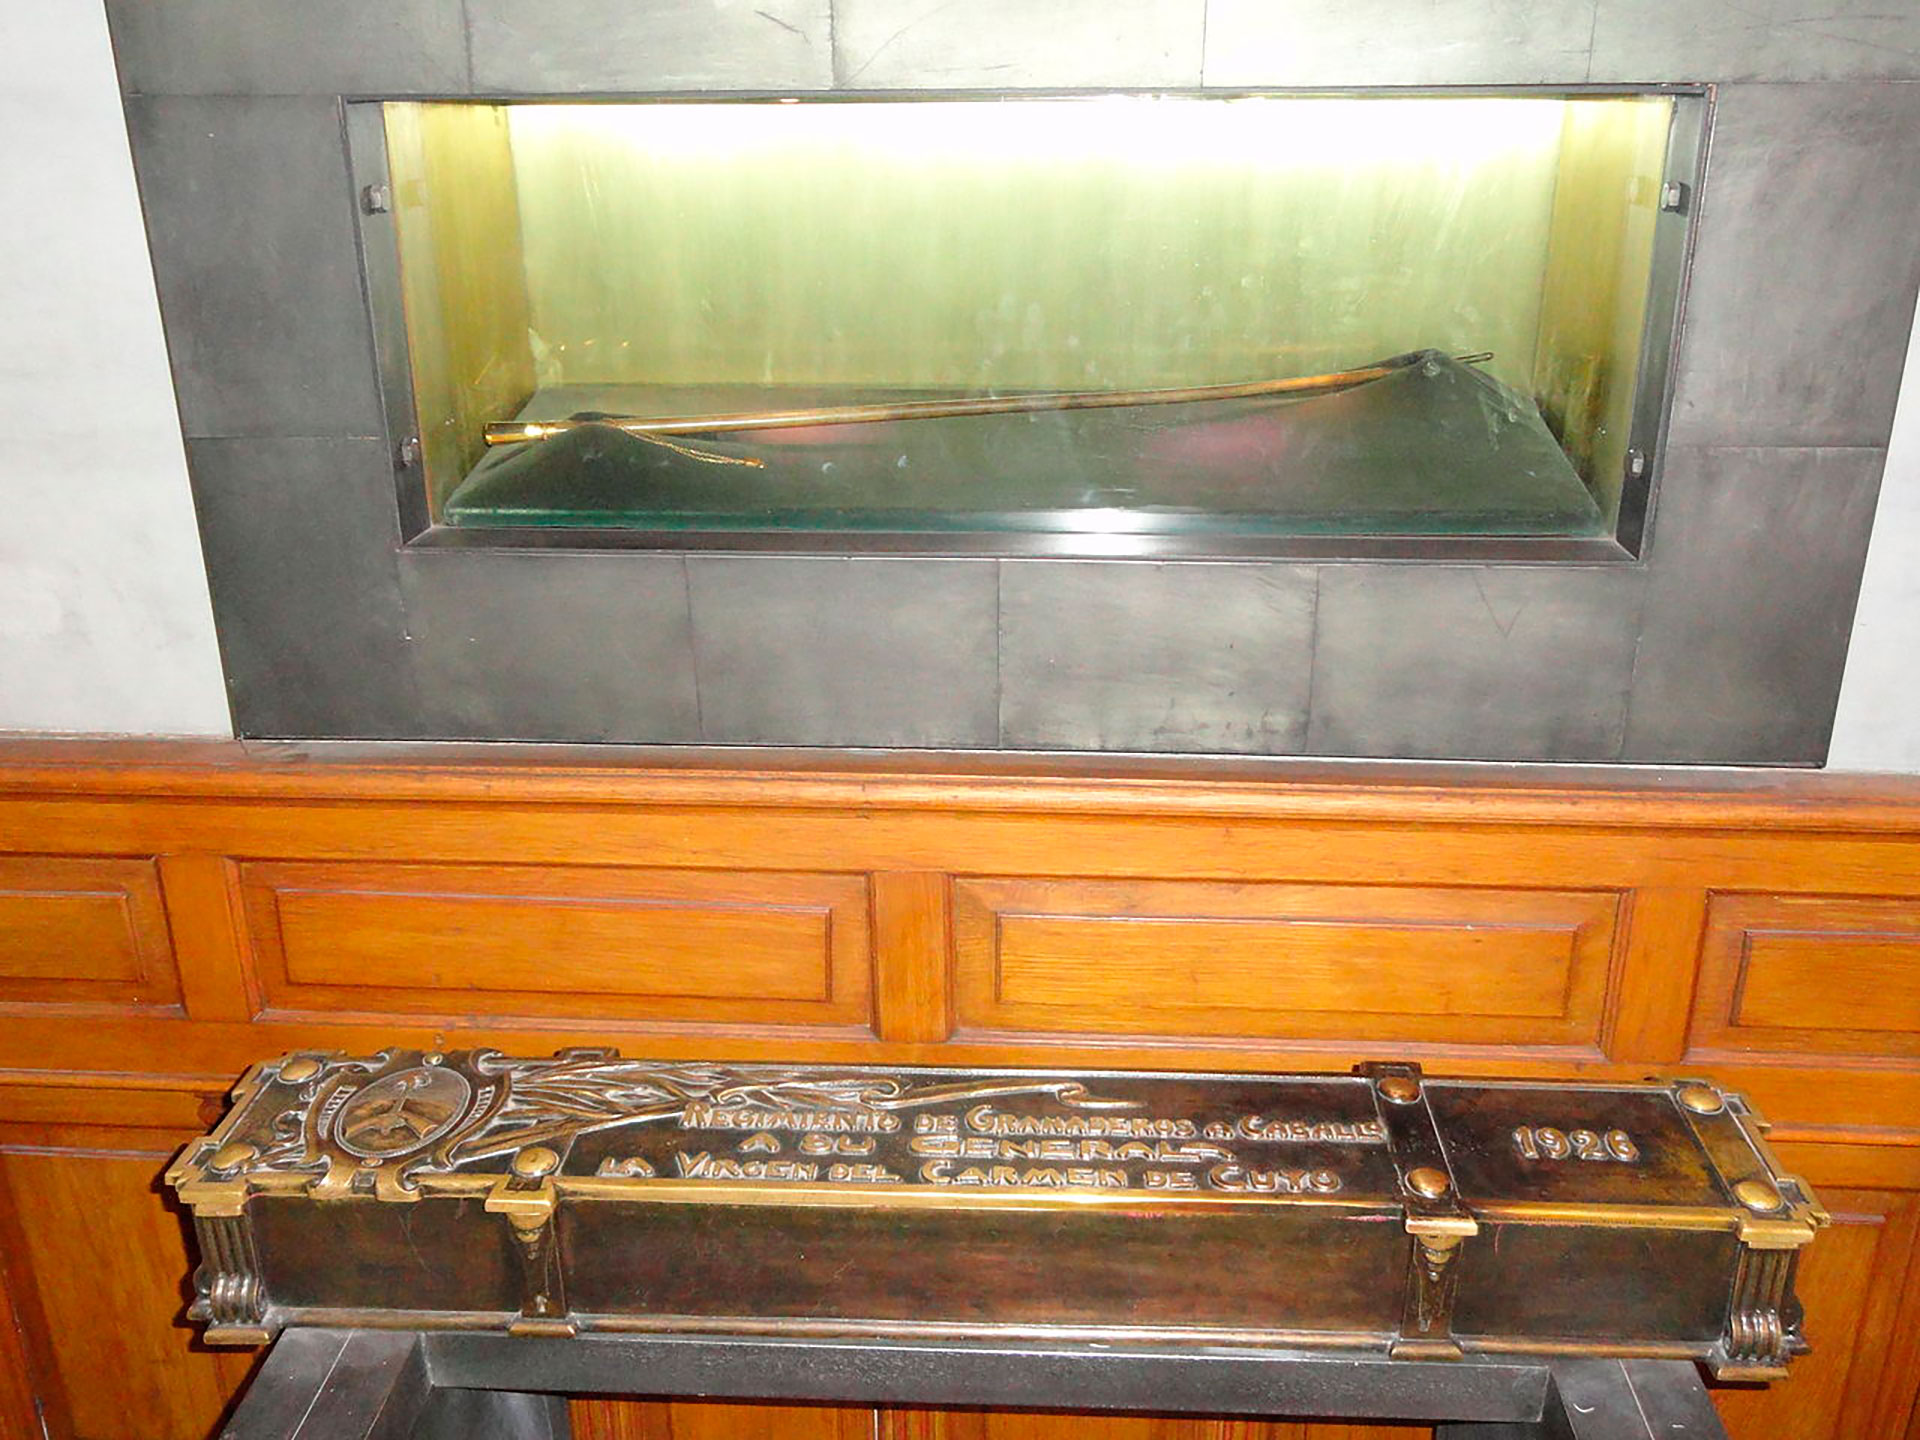 El bastón de mando de San Martín, depositado a los pies de la Virgen, se exhibe en la Iglesia San Francisco de Mendoza